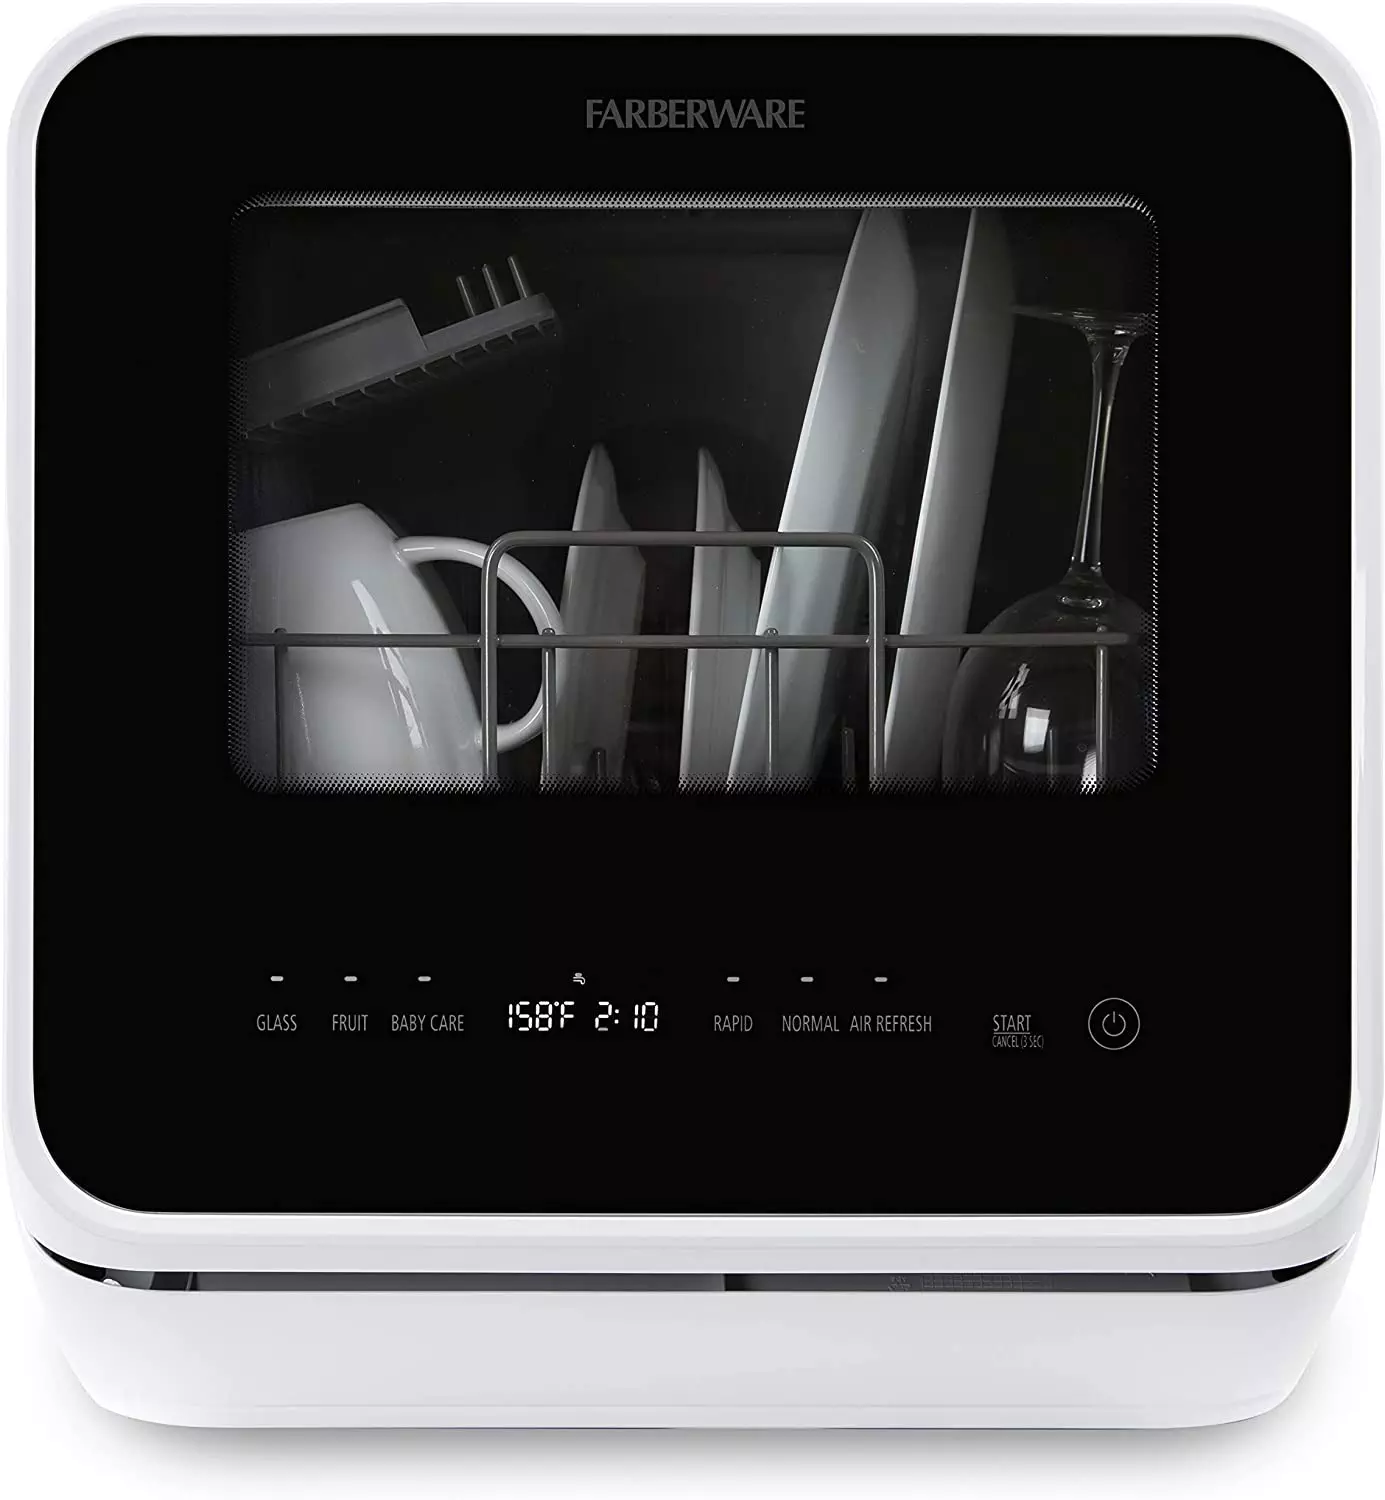 The Amazing Farberware Complete Portable Countertop Dishwasher